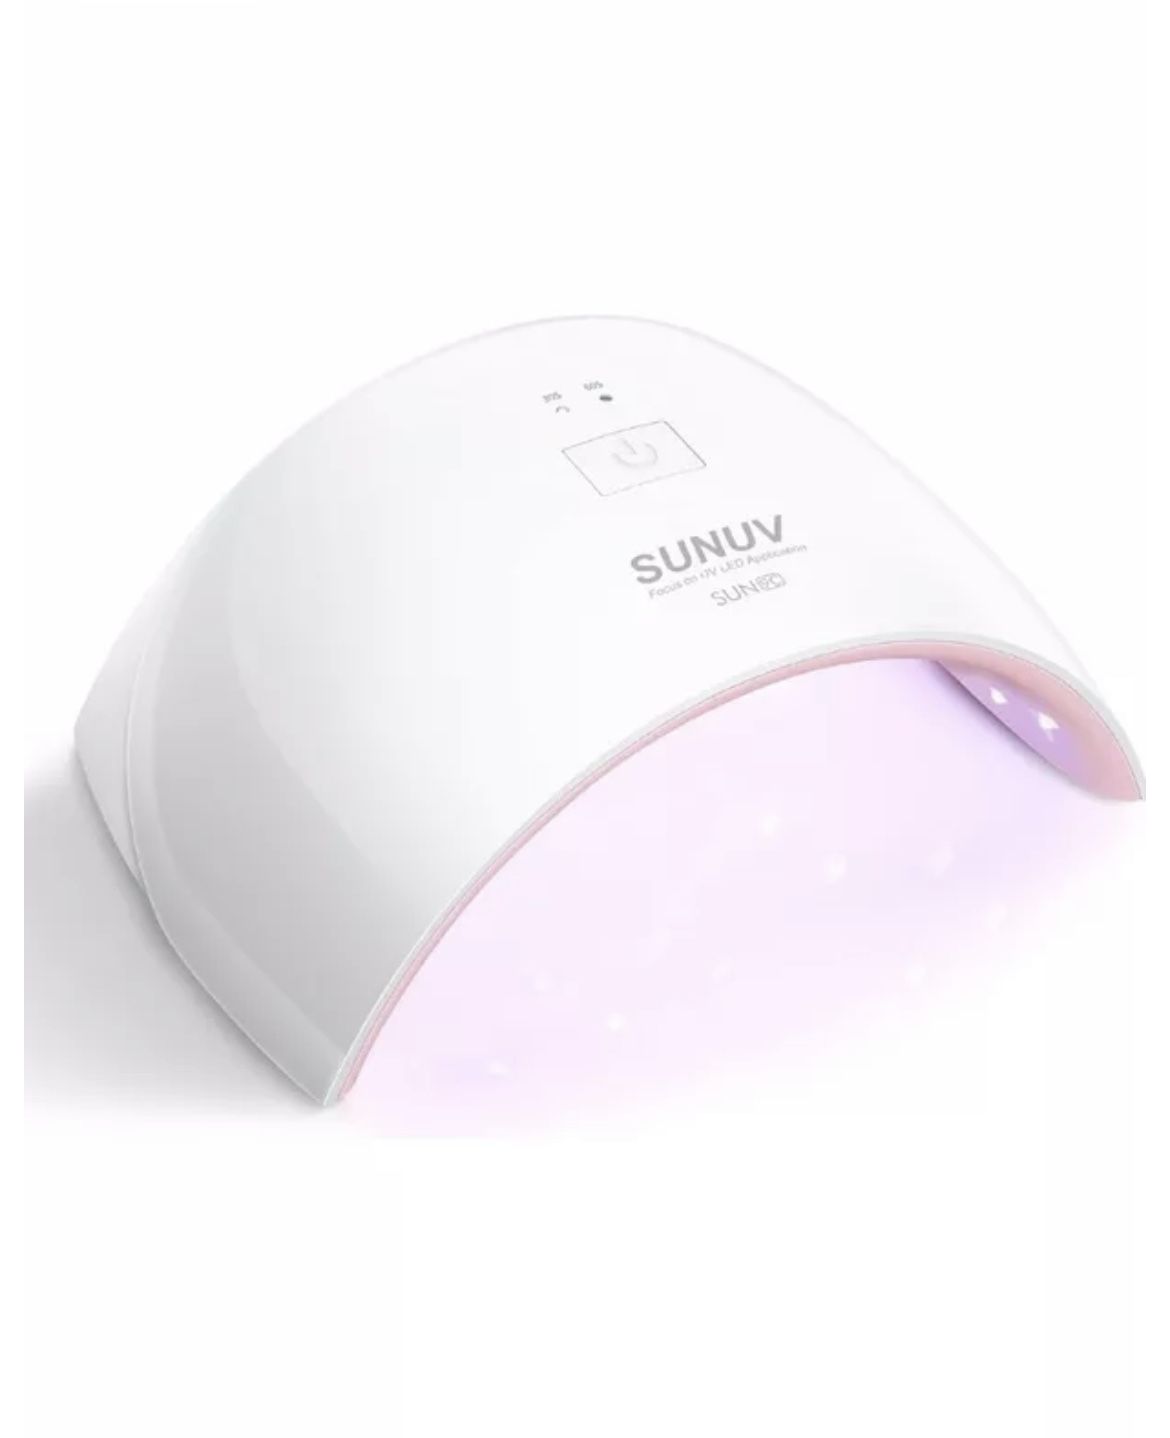 SUNUV UV LED Nail Lamp, Gel UV Light Nail Dryer for Gel Nail Polish SUN9C Pink